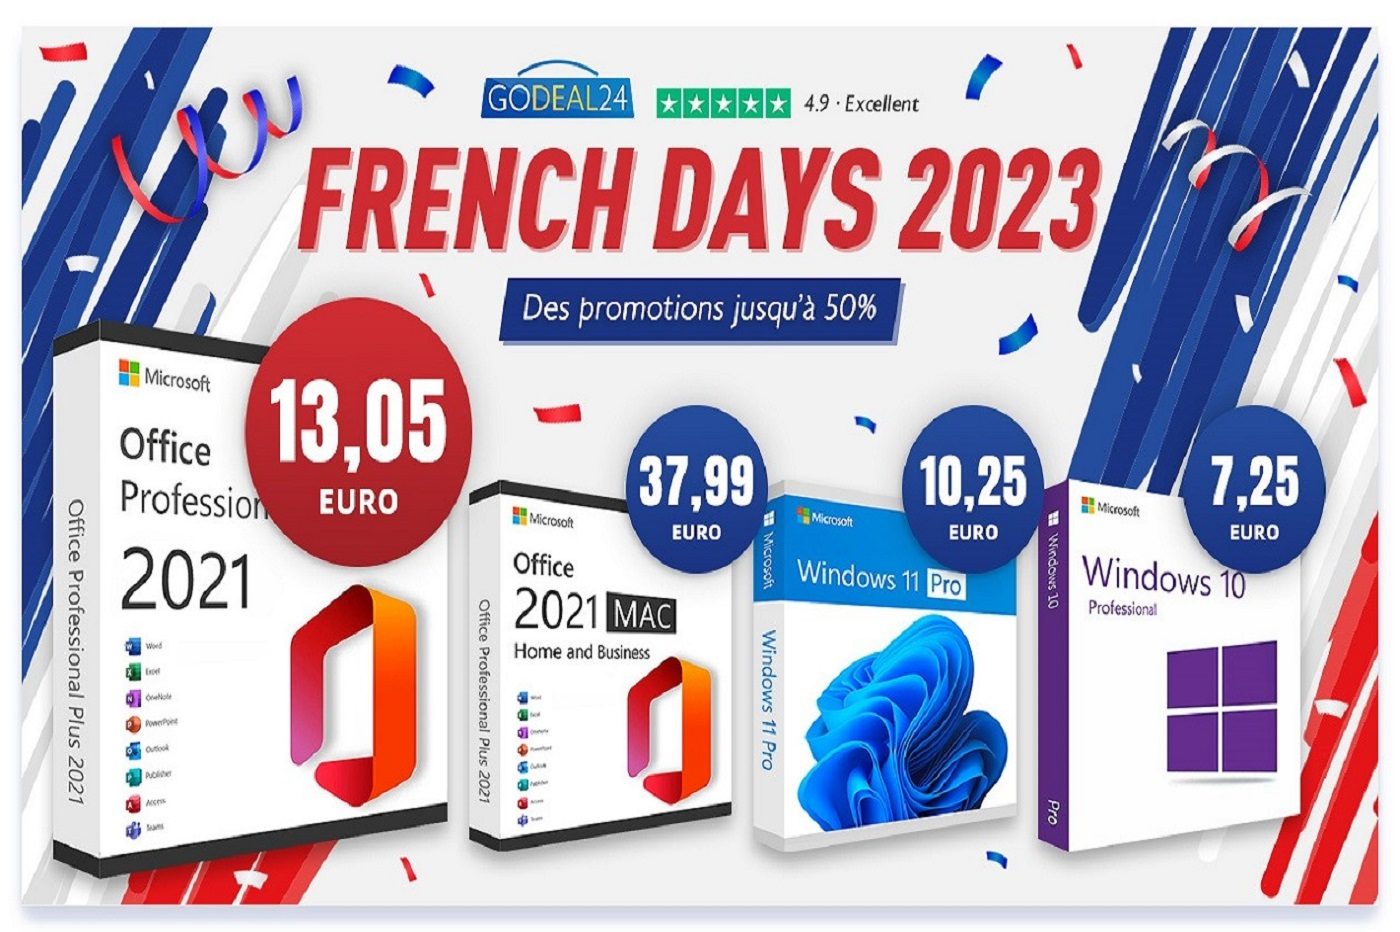 Achetez une licence Microsoft Office 2021 à partir de 12,99 euros sur le  site Godeal24 !